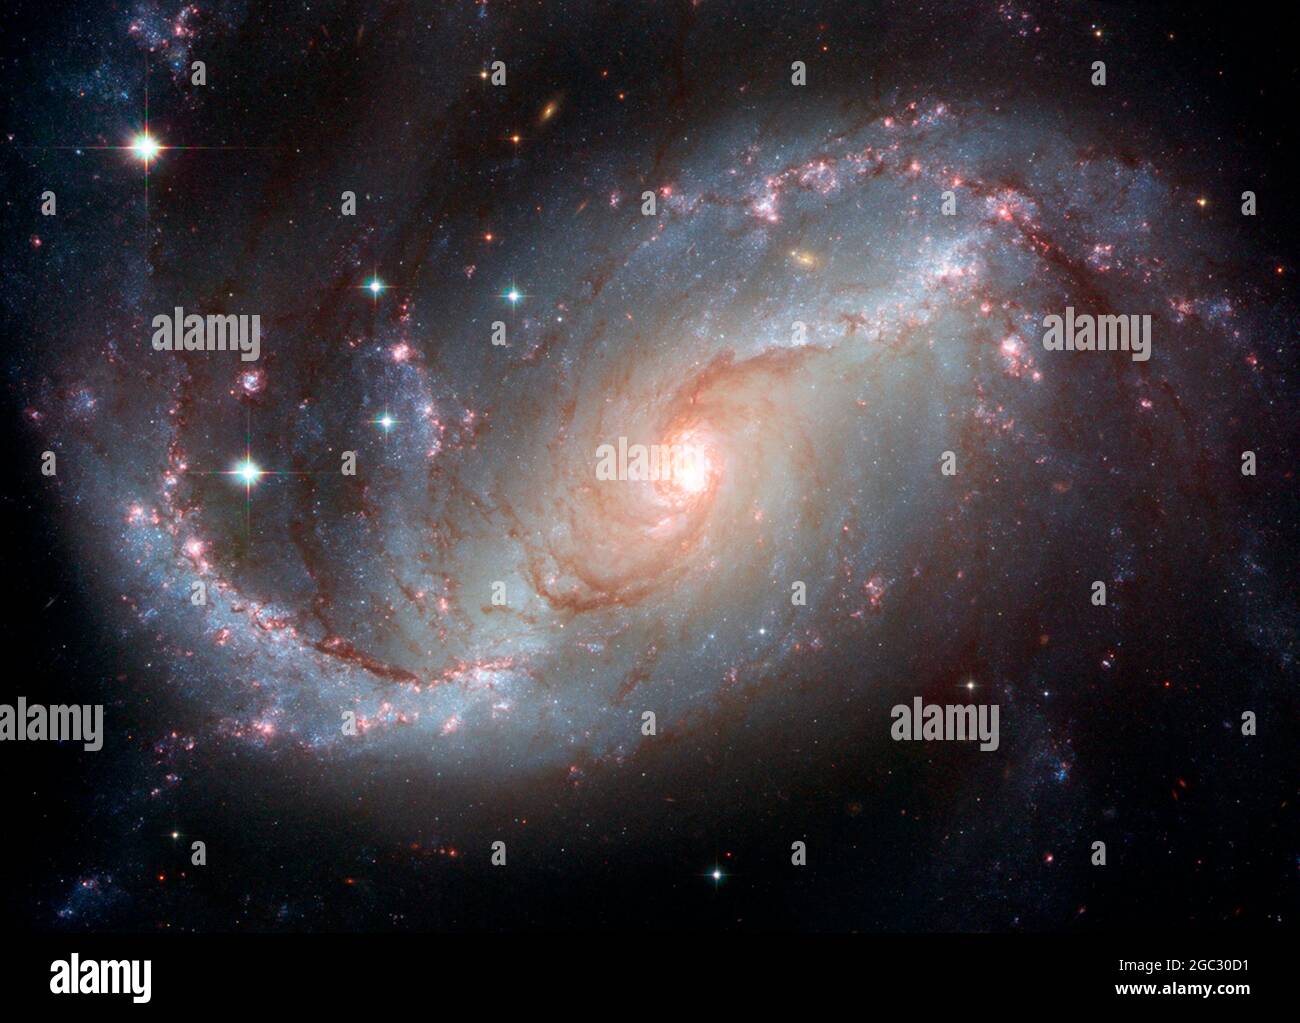 SPAZIO ESTERNO - NGC 1672 - conosciuto anche come la galassia a spirale barrata vista dal telescopio spaziale Hubble - Foto: Geopix/NASA/ESA Foto Stock